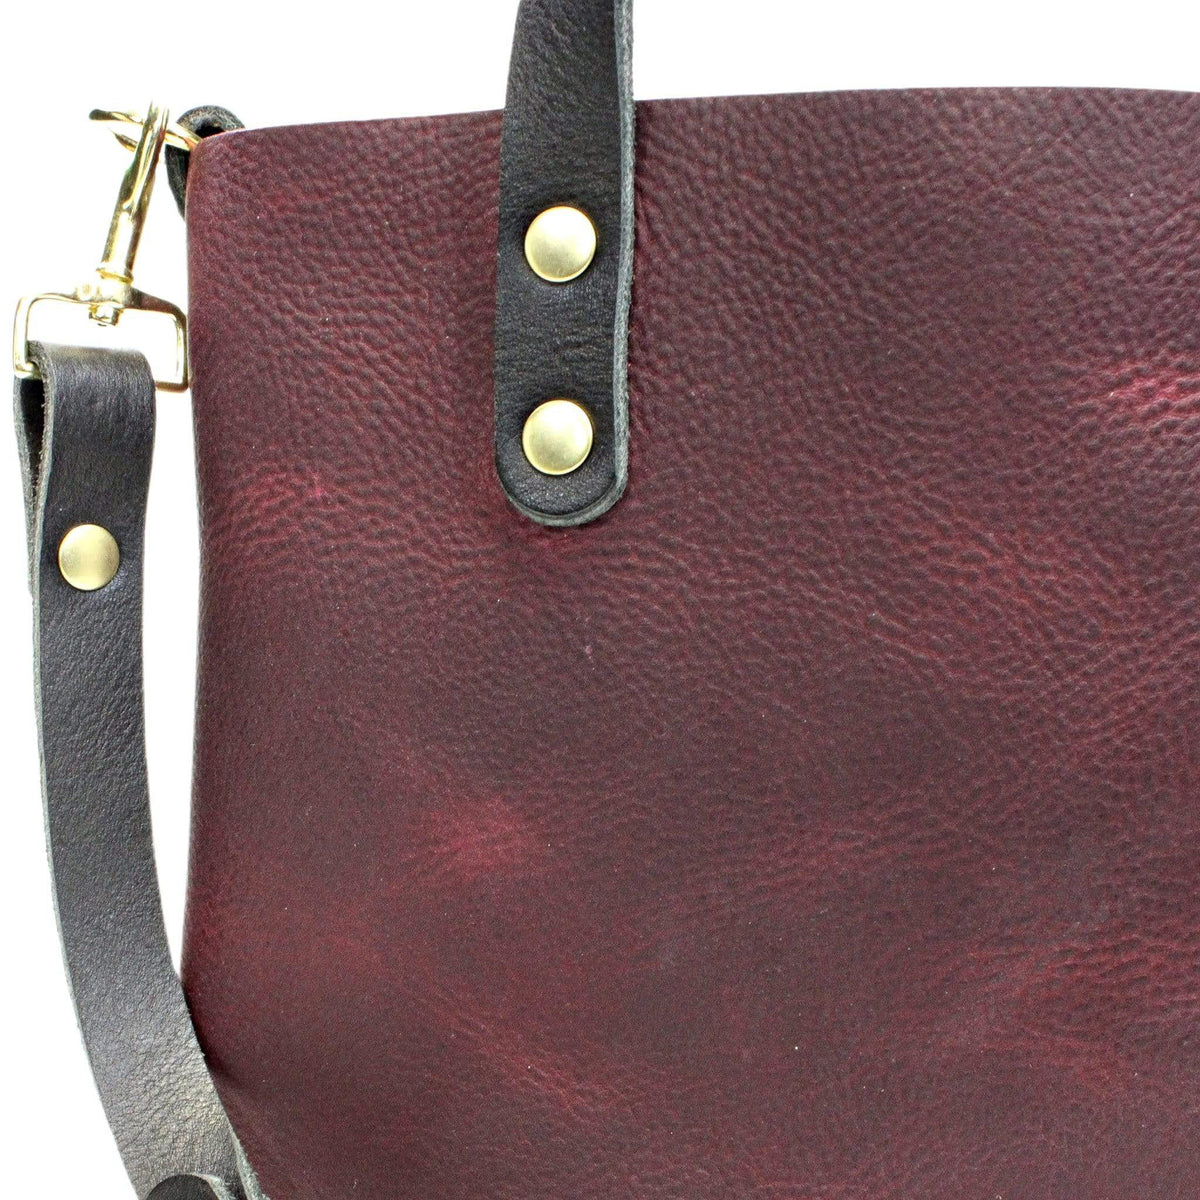 Kodiak Leather Crossbody Bag